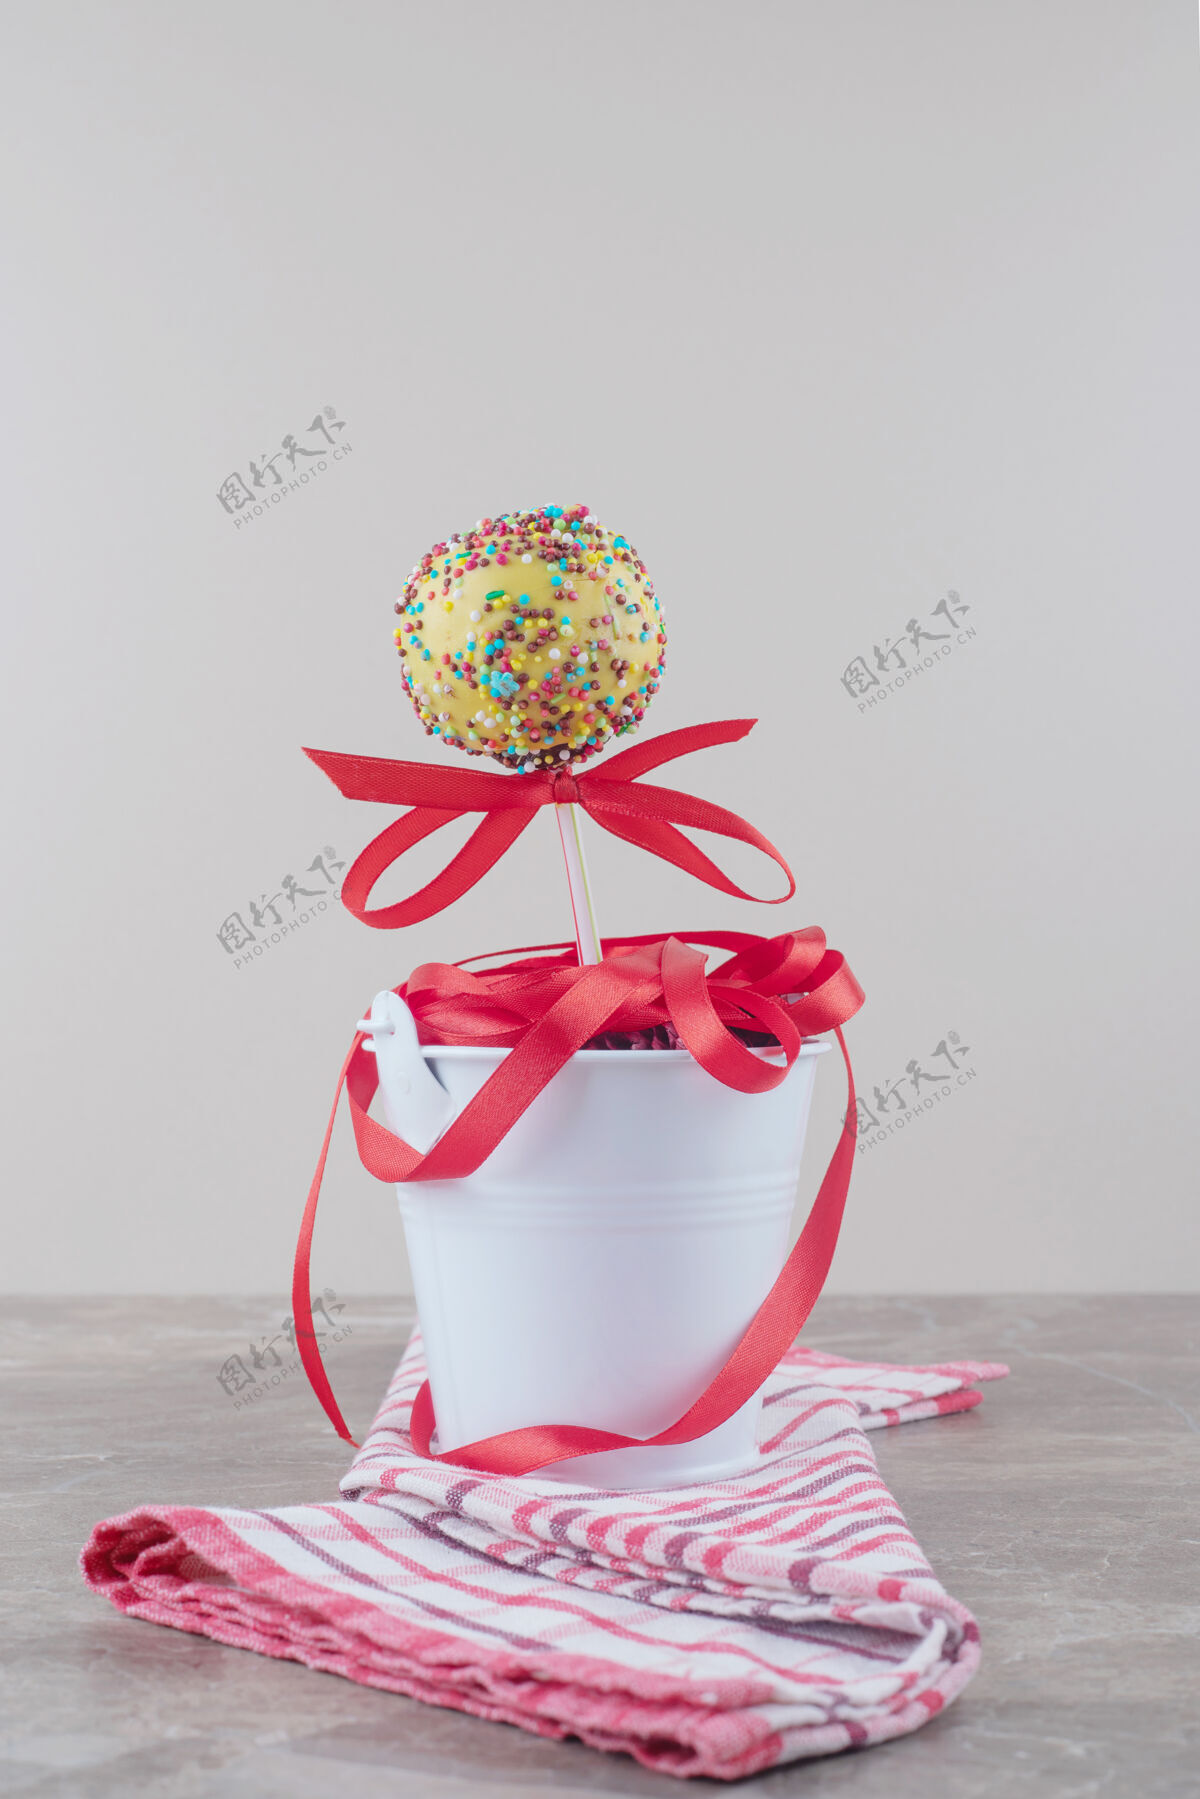 糕点一捆丝带和一个棒棒糖放在大理石上的毛巾桶里外套美味桶